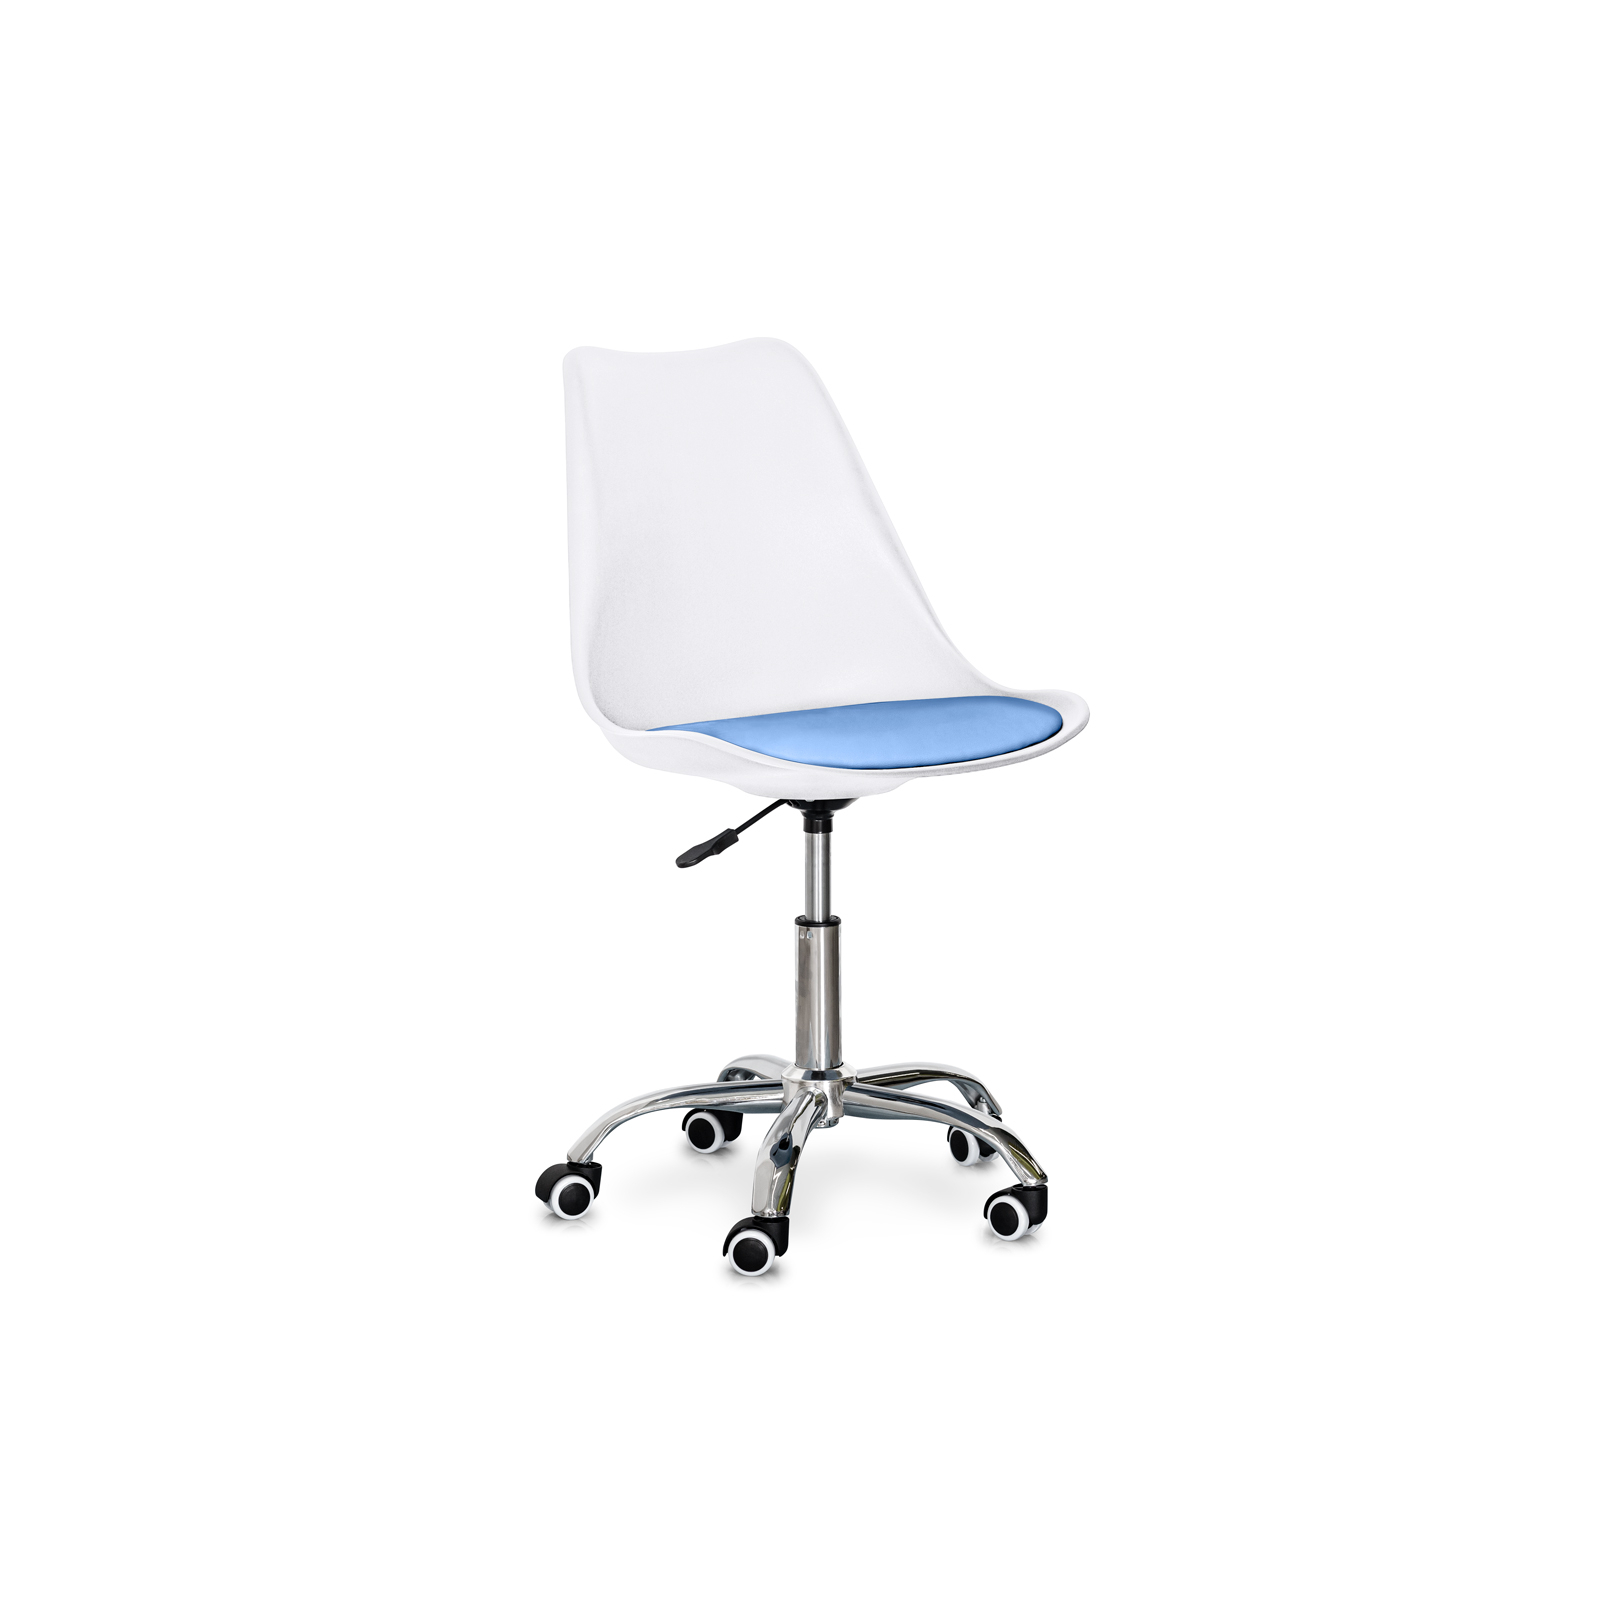 Офисное кресло Evo-kids Capri White / Blue (H-231 W/BL)